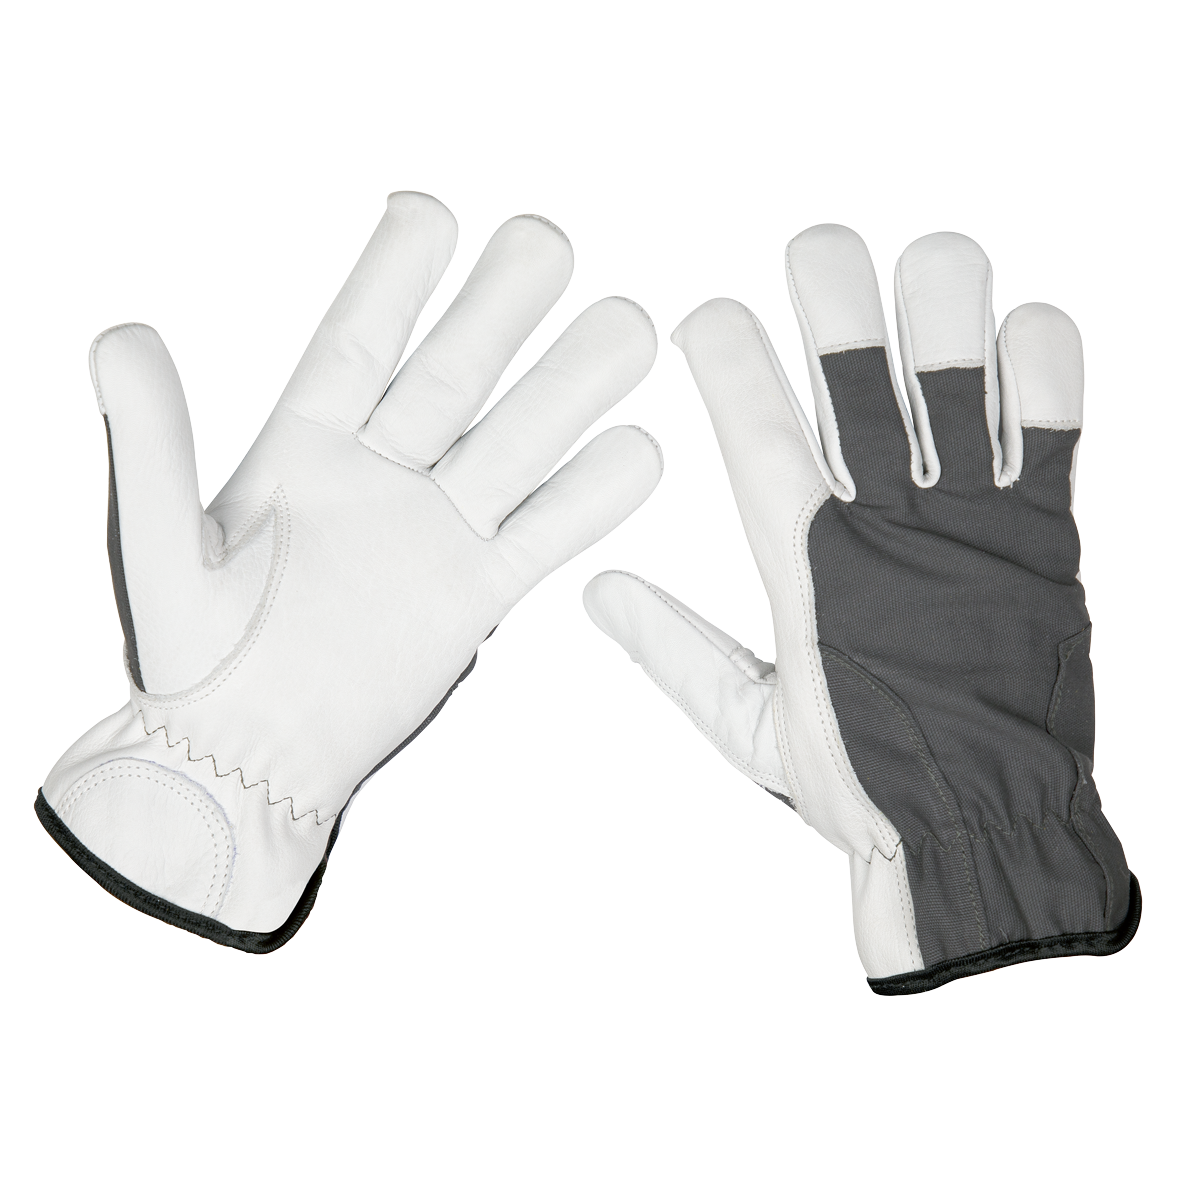 Super Cool Hide Gloves